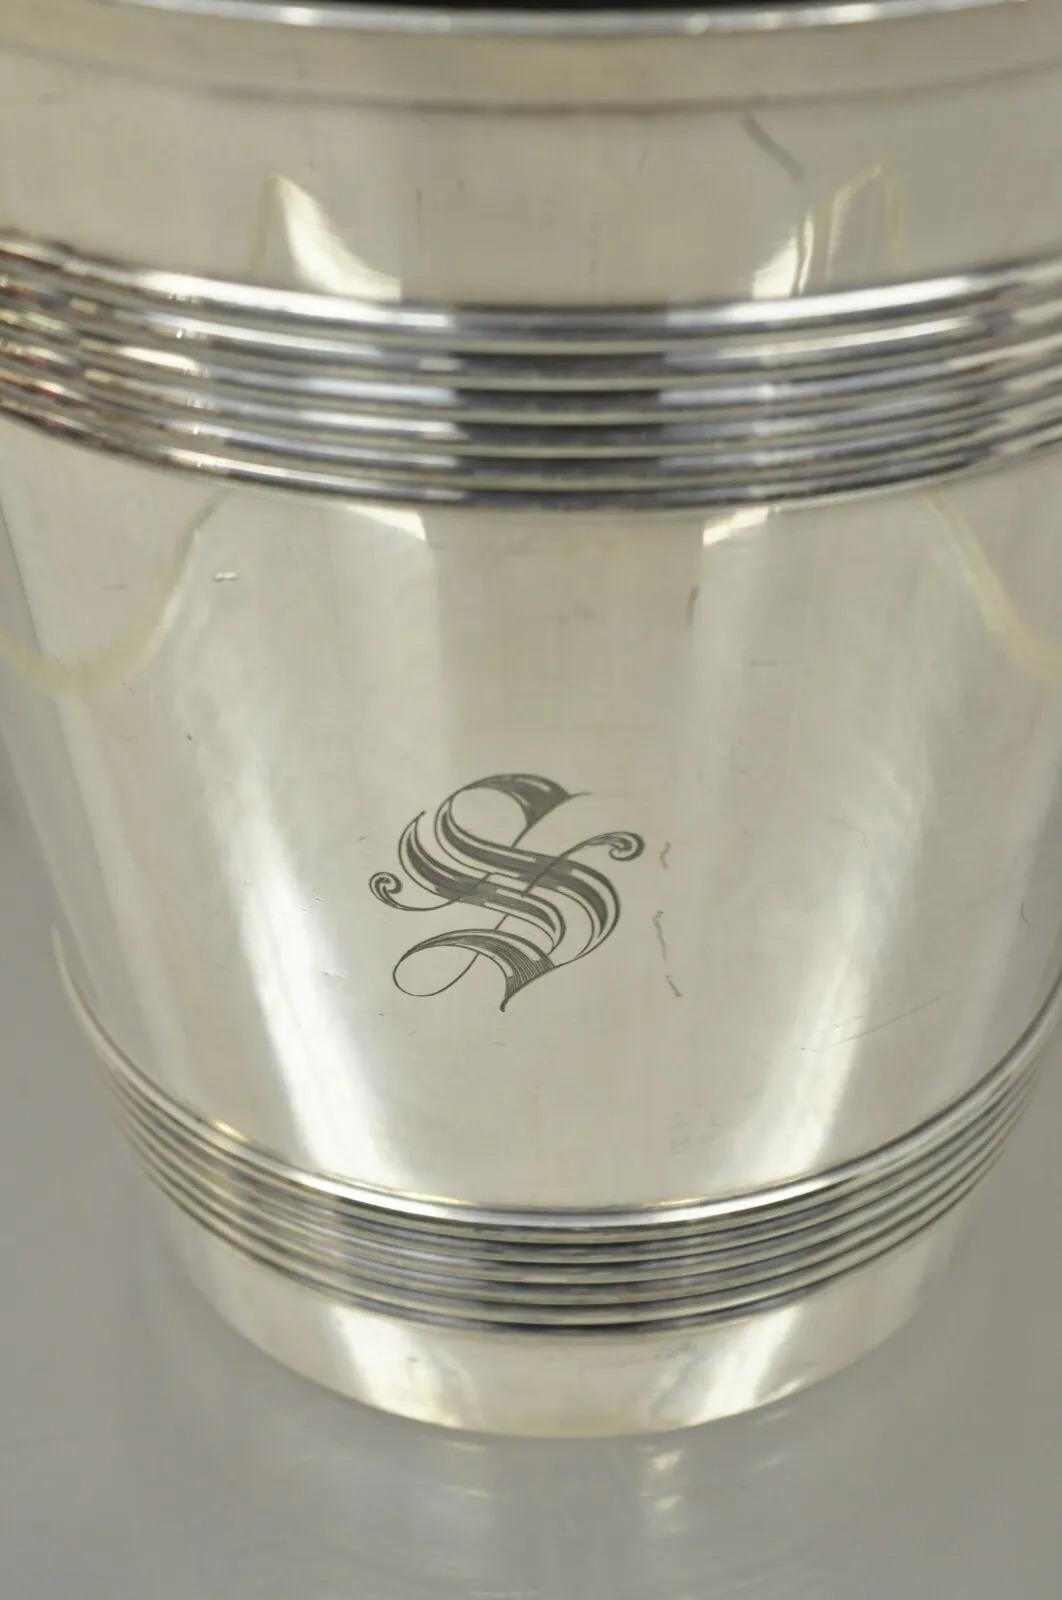 International Wilcox S.P. Co English Regency Champagne Chiller Ice Bucket, 800 Silver. Les caractéristiques de l'objet sont remarquables : qualité et poids, monogramme 